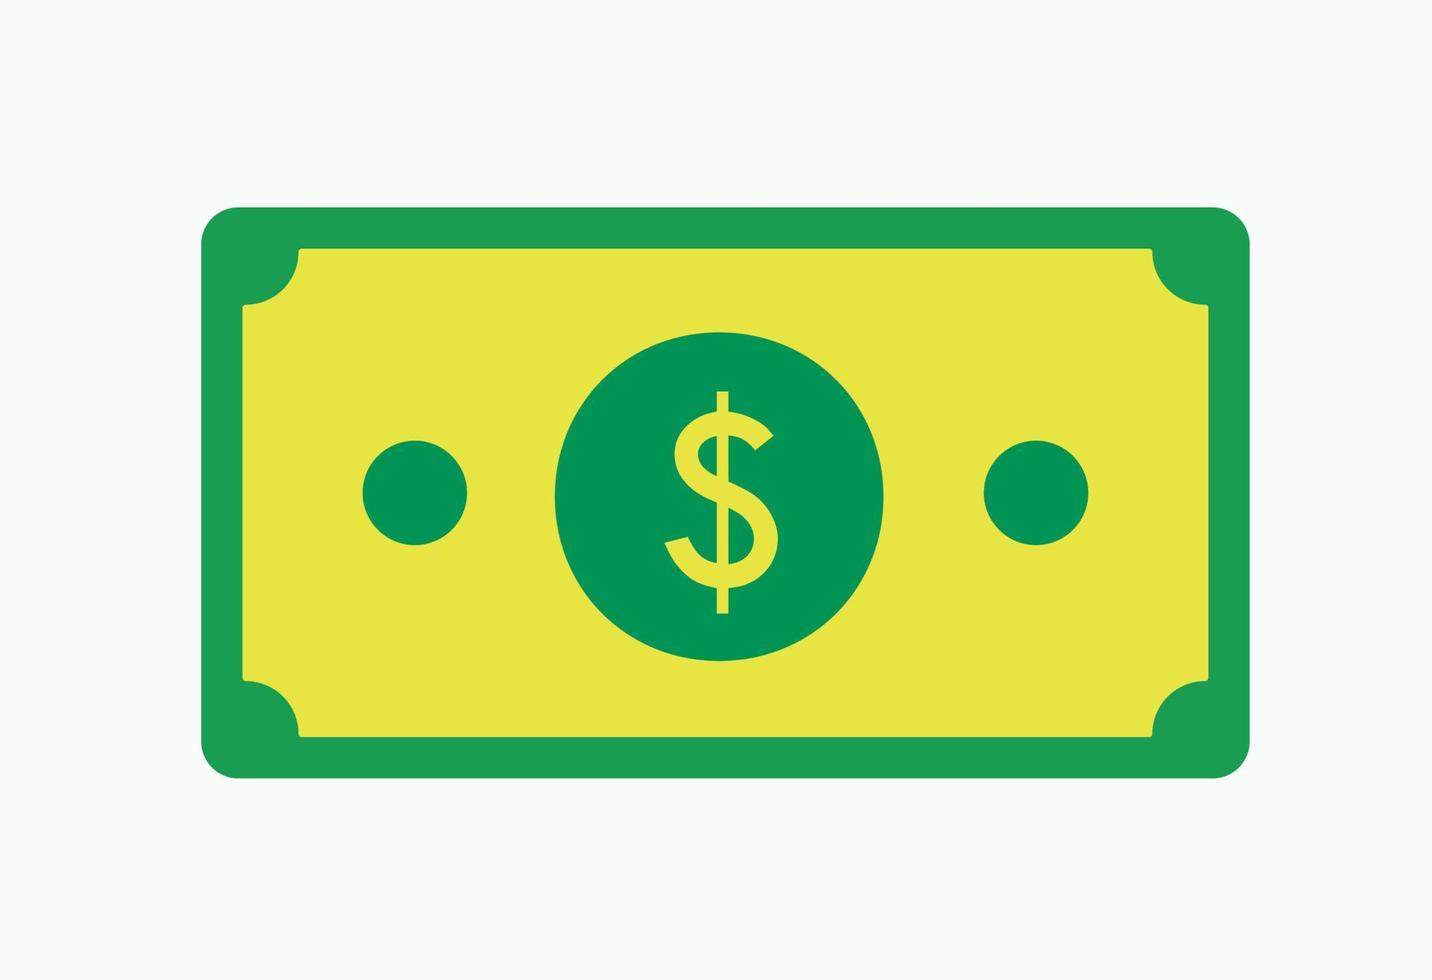 groene dollar biljet amerikaanse valuta geïsoleerde illustratie pictogram minimaal financieel symbool vector